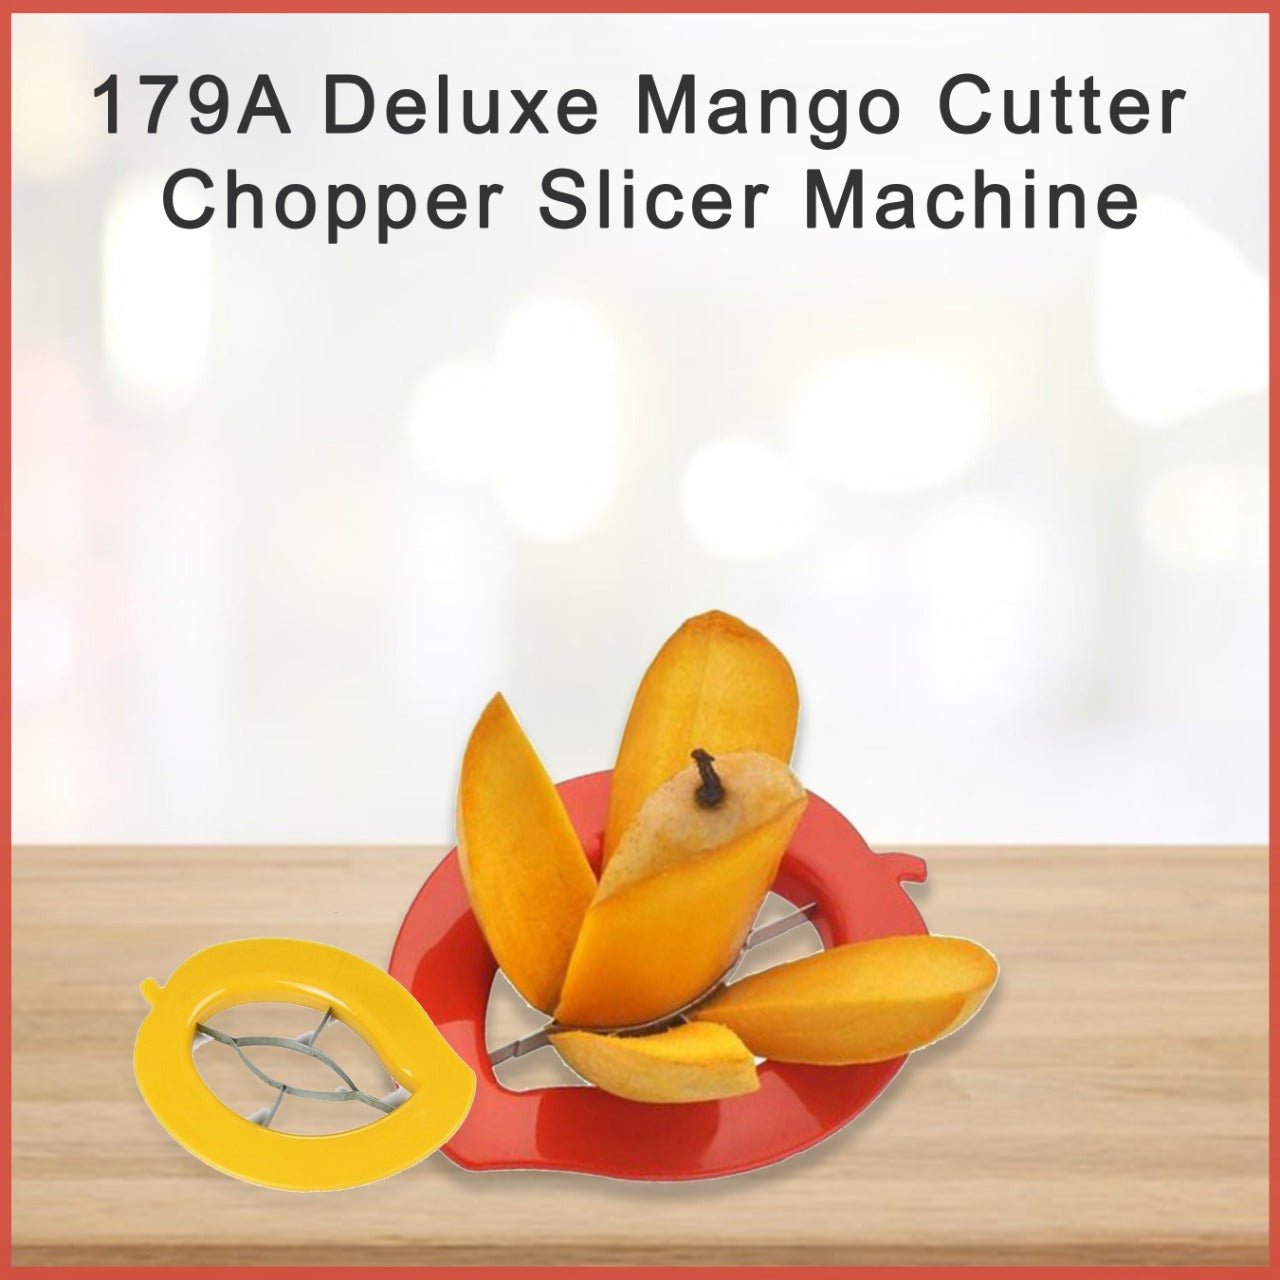 Deluxe Mango Cutter Chopper Slicer Machine